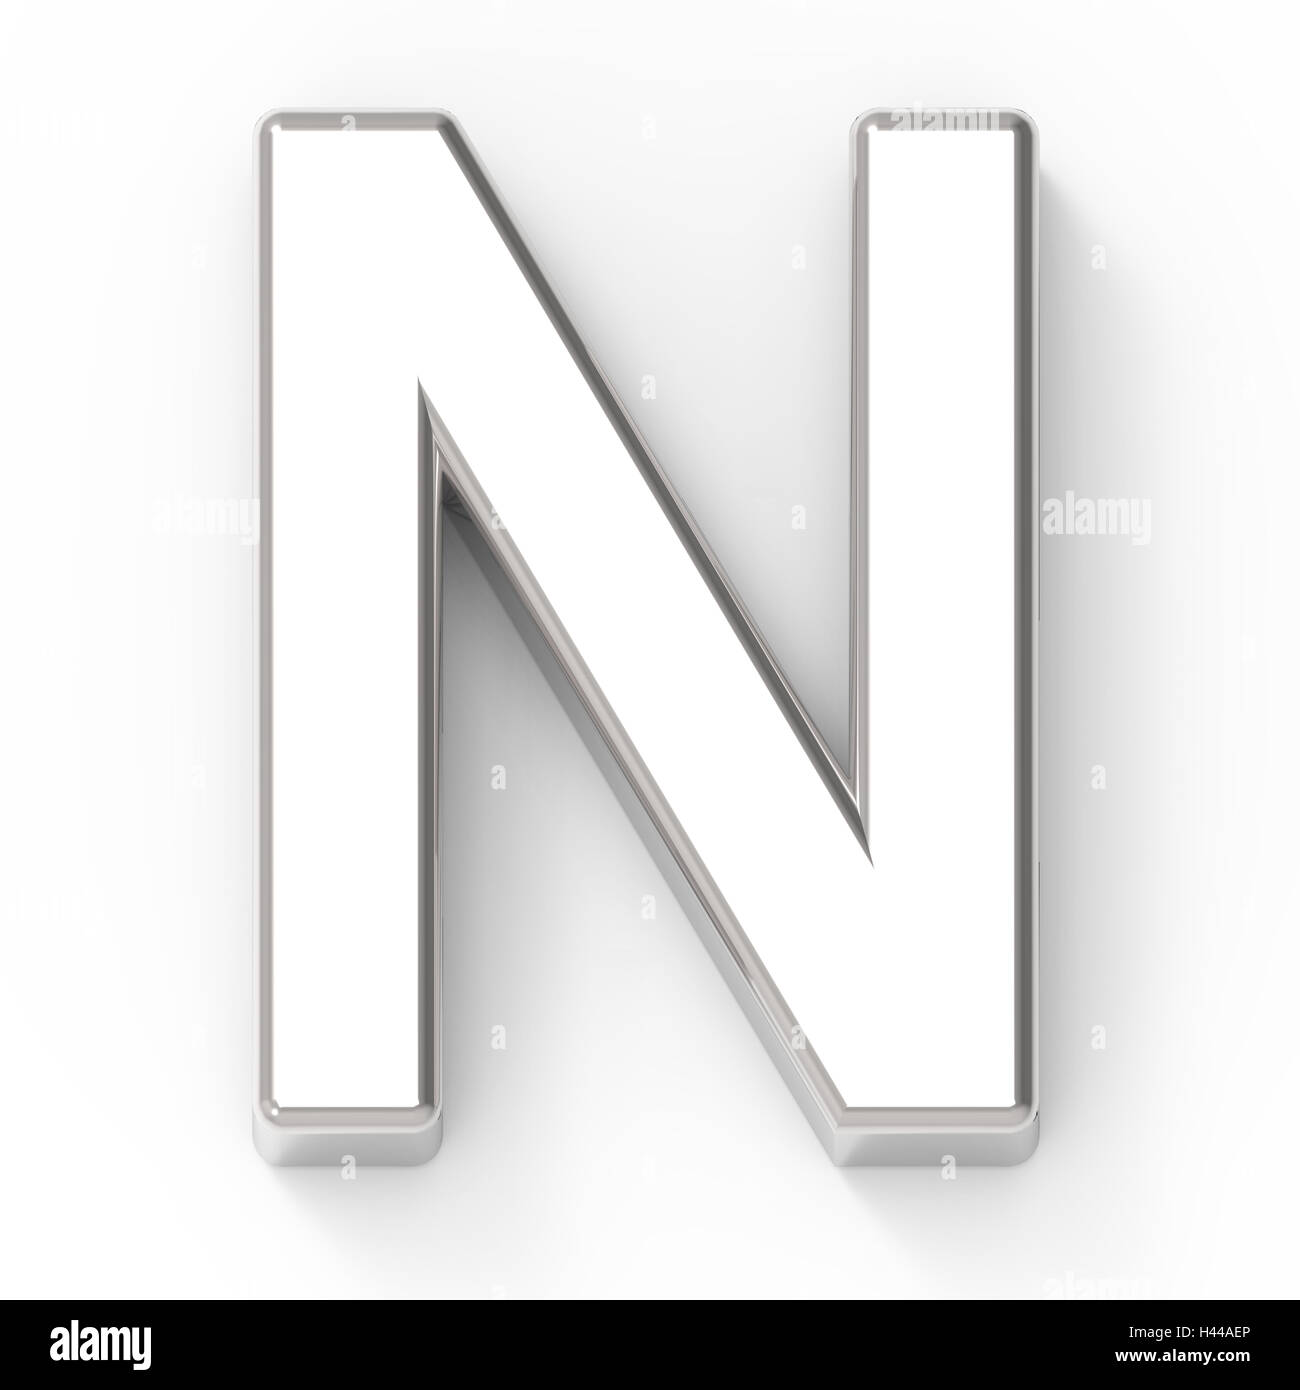 La letra N de plata en 3D, 3D rendering gráfico aislado fondo blanco. Foto de stock